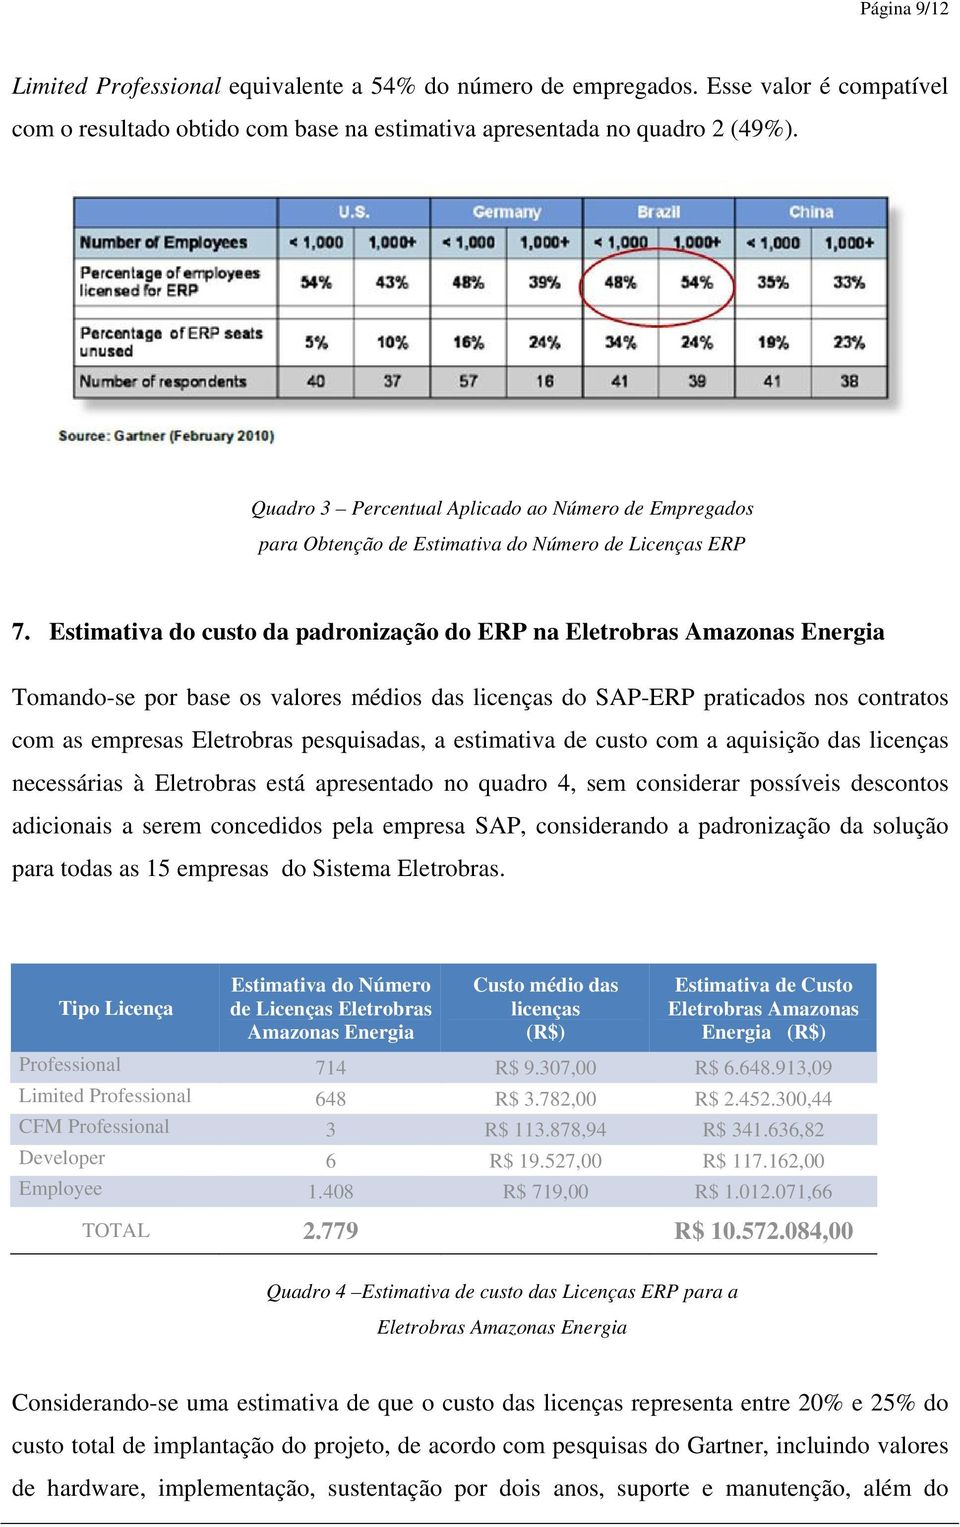 Estimativa do custo da padronização do ERP na Eletrobras Amazonas Energia Tomando-se por base os valores médios das licenças do SAP-ERP praticados nos contratos com as empresas Eletrobras